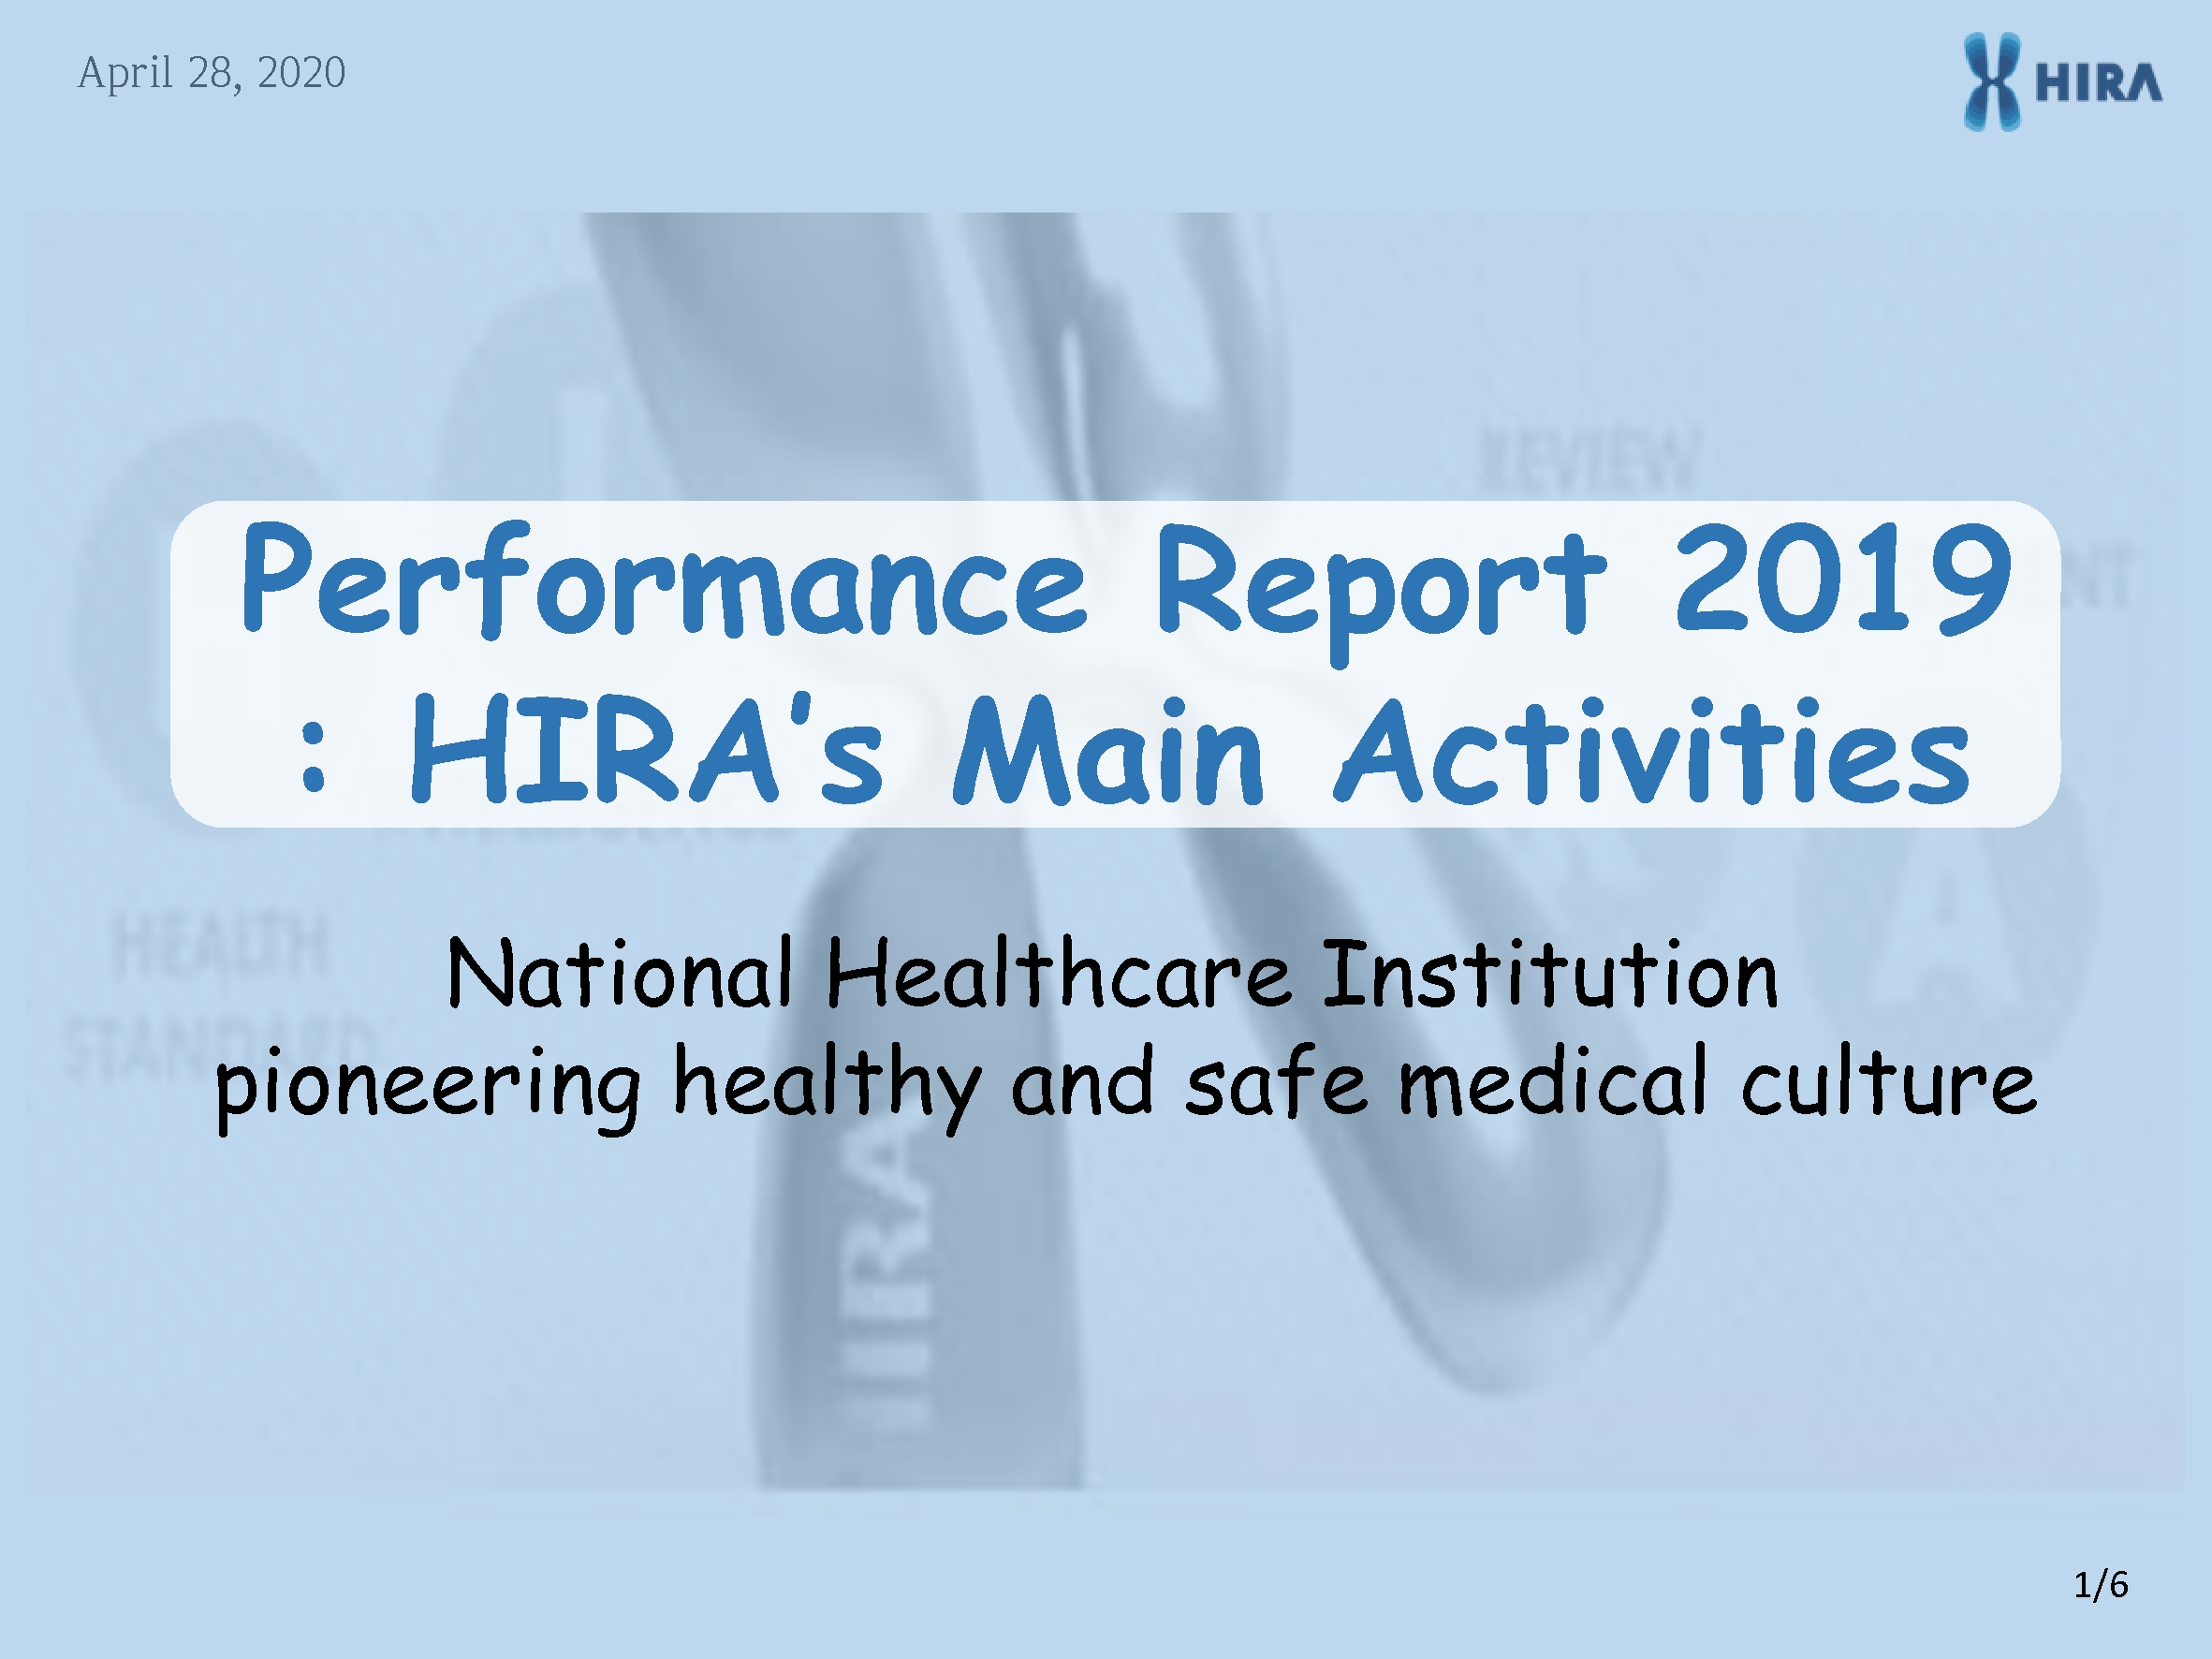 Performance Report 2019: HIRA's Main Activities